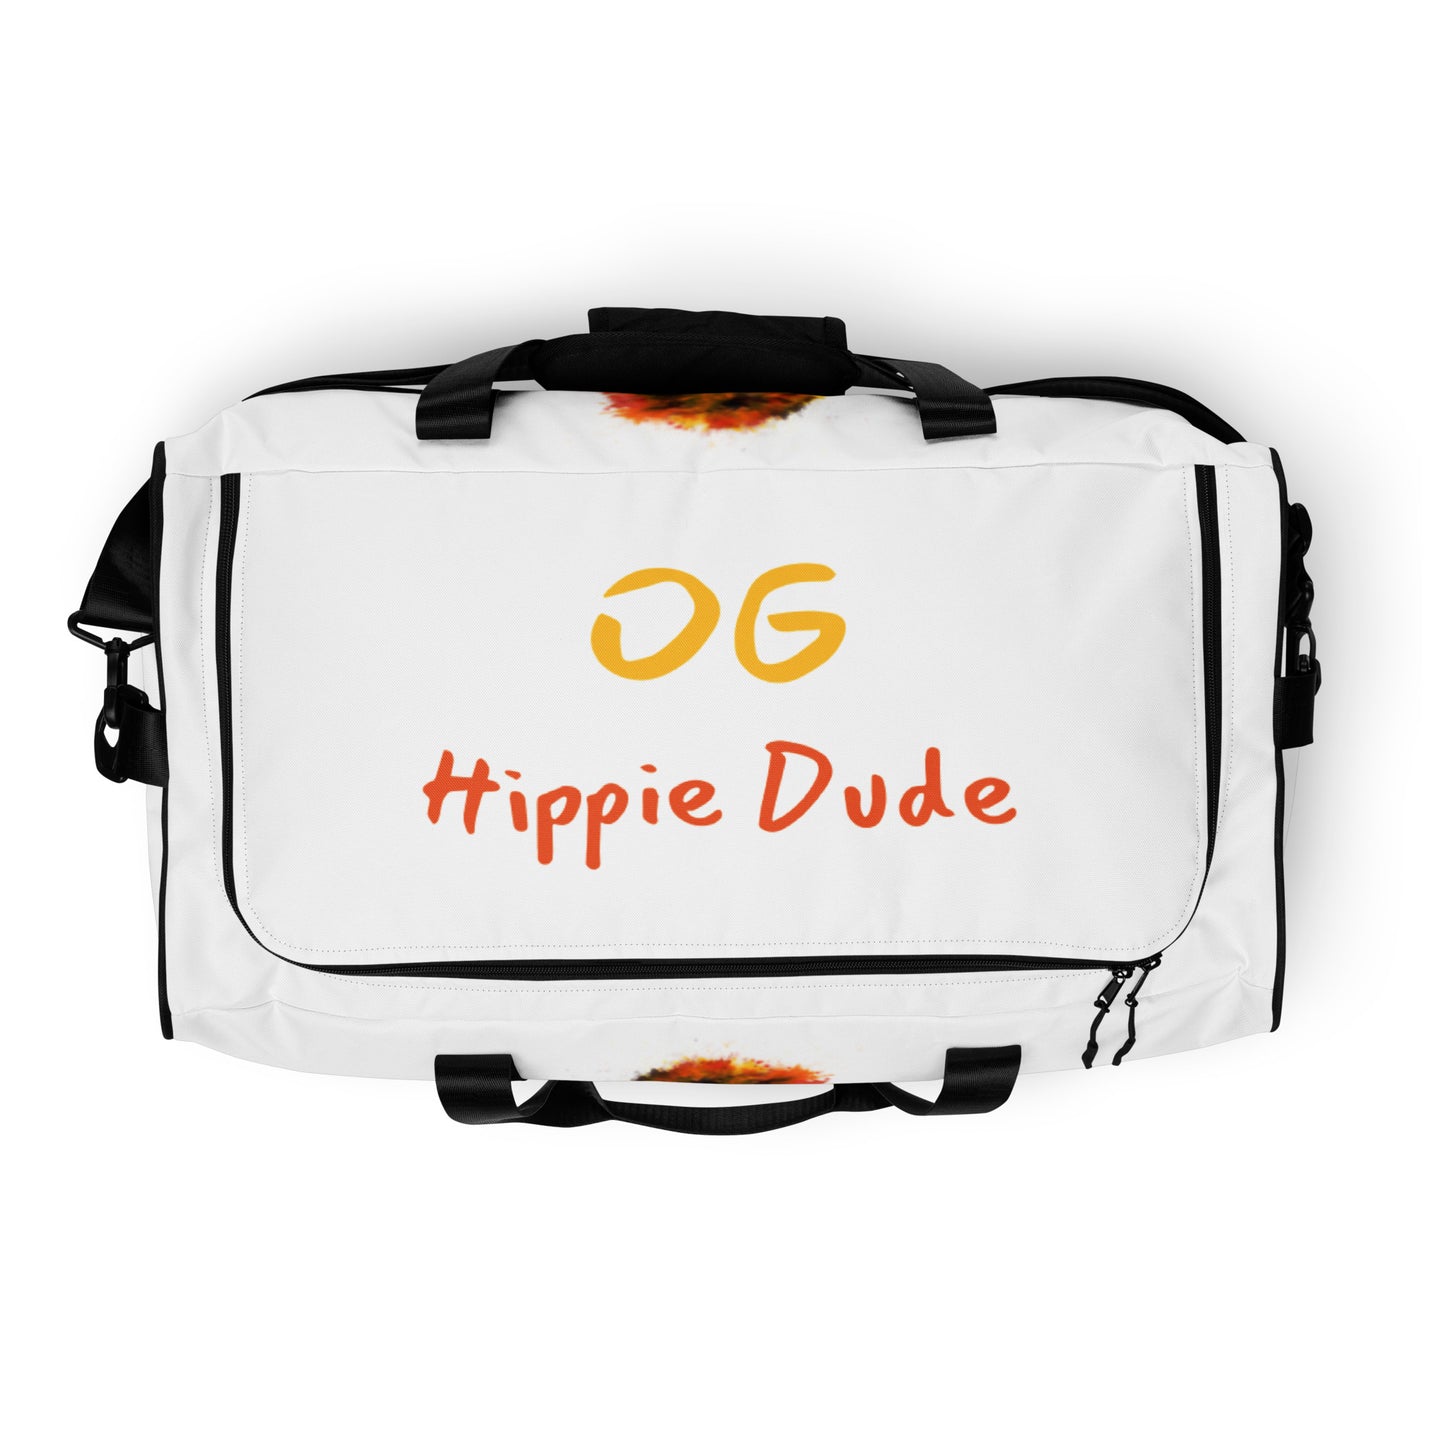 White Duffle Bag - OG Hippie Dude